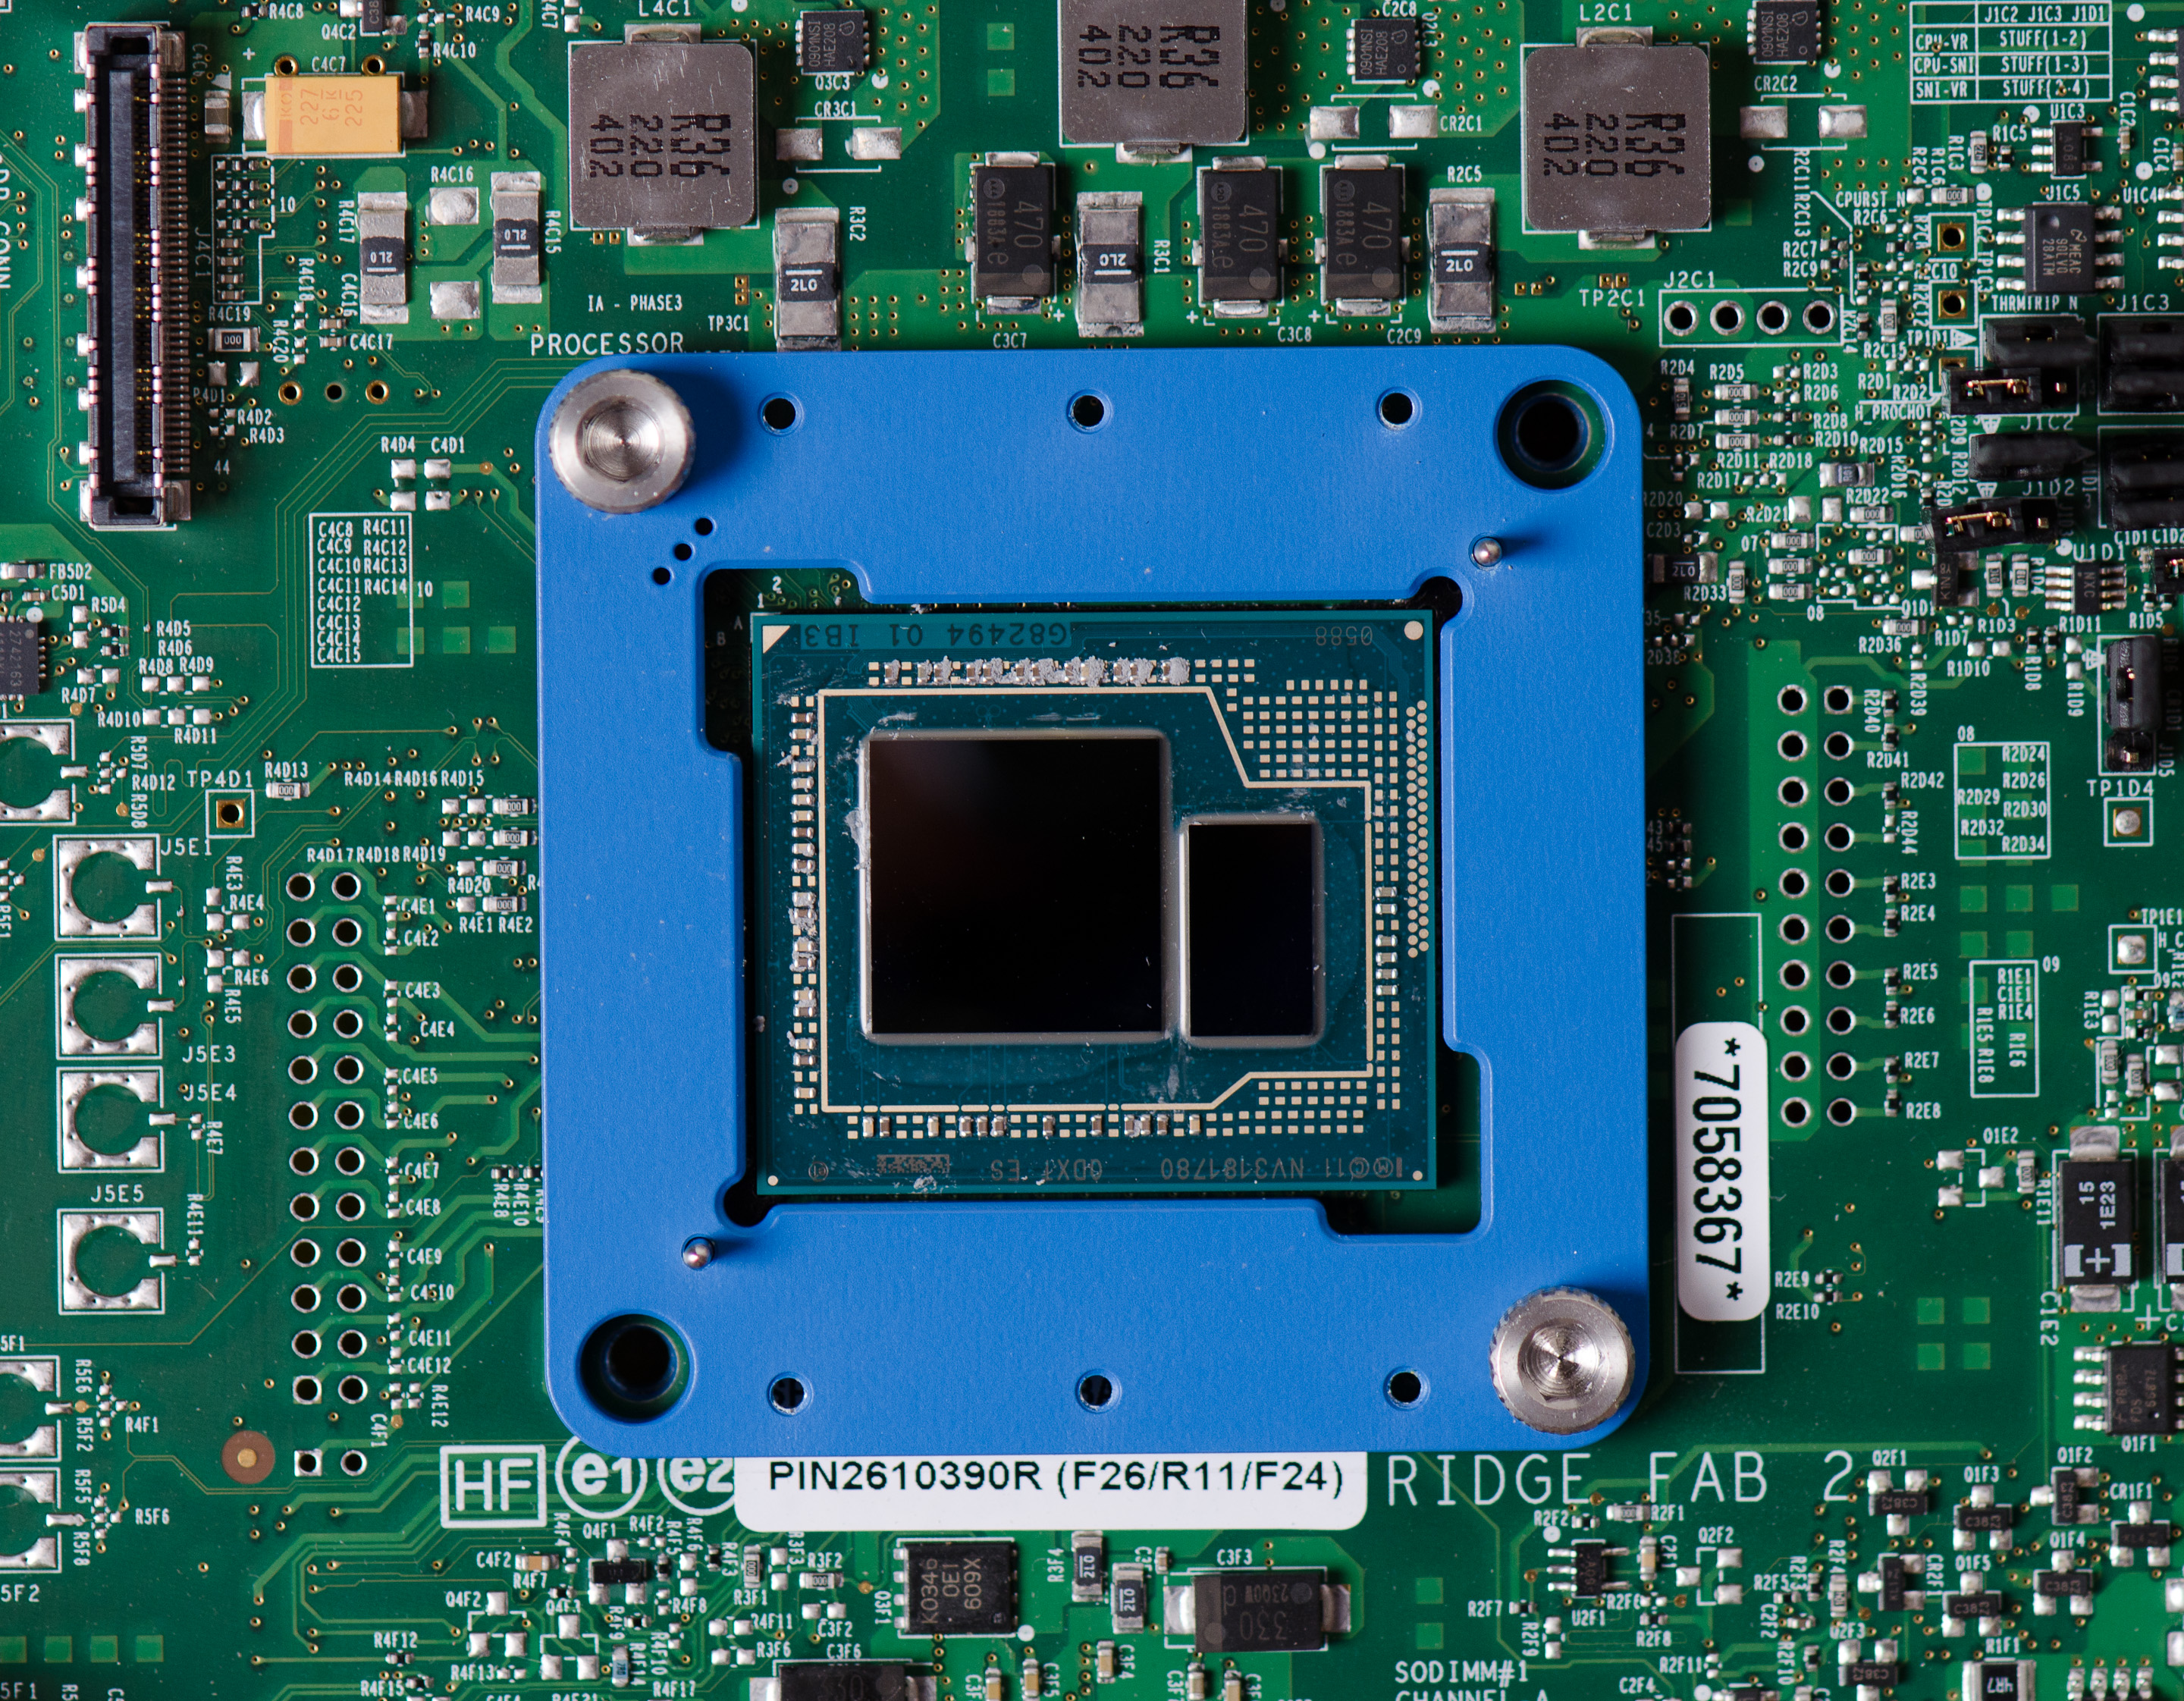 Intel 3 pro. Интегрированная видеокарта Интел. Iris Pro Graphics 5200. Встроенная видеокарта Intel Graphics. Intel Graphics видеокарта дискретная.